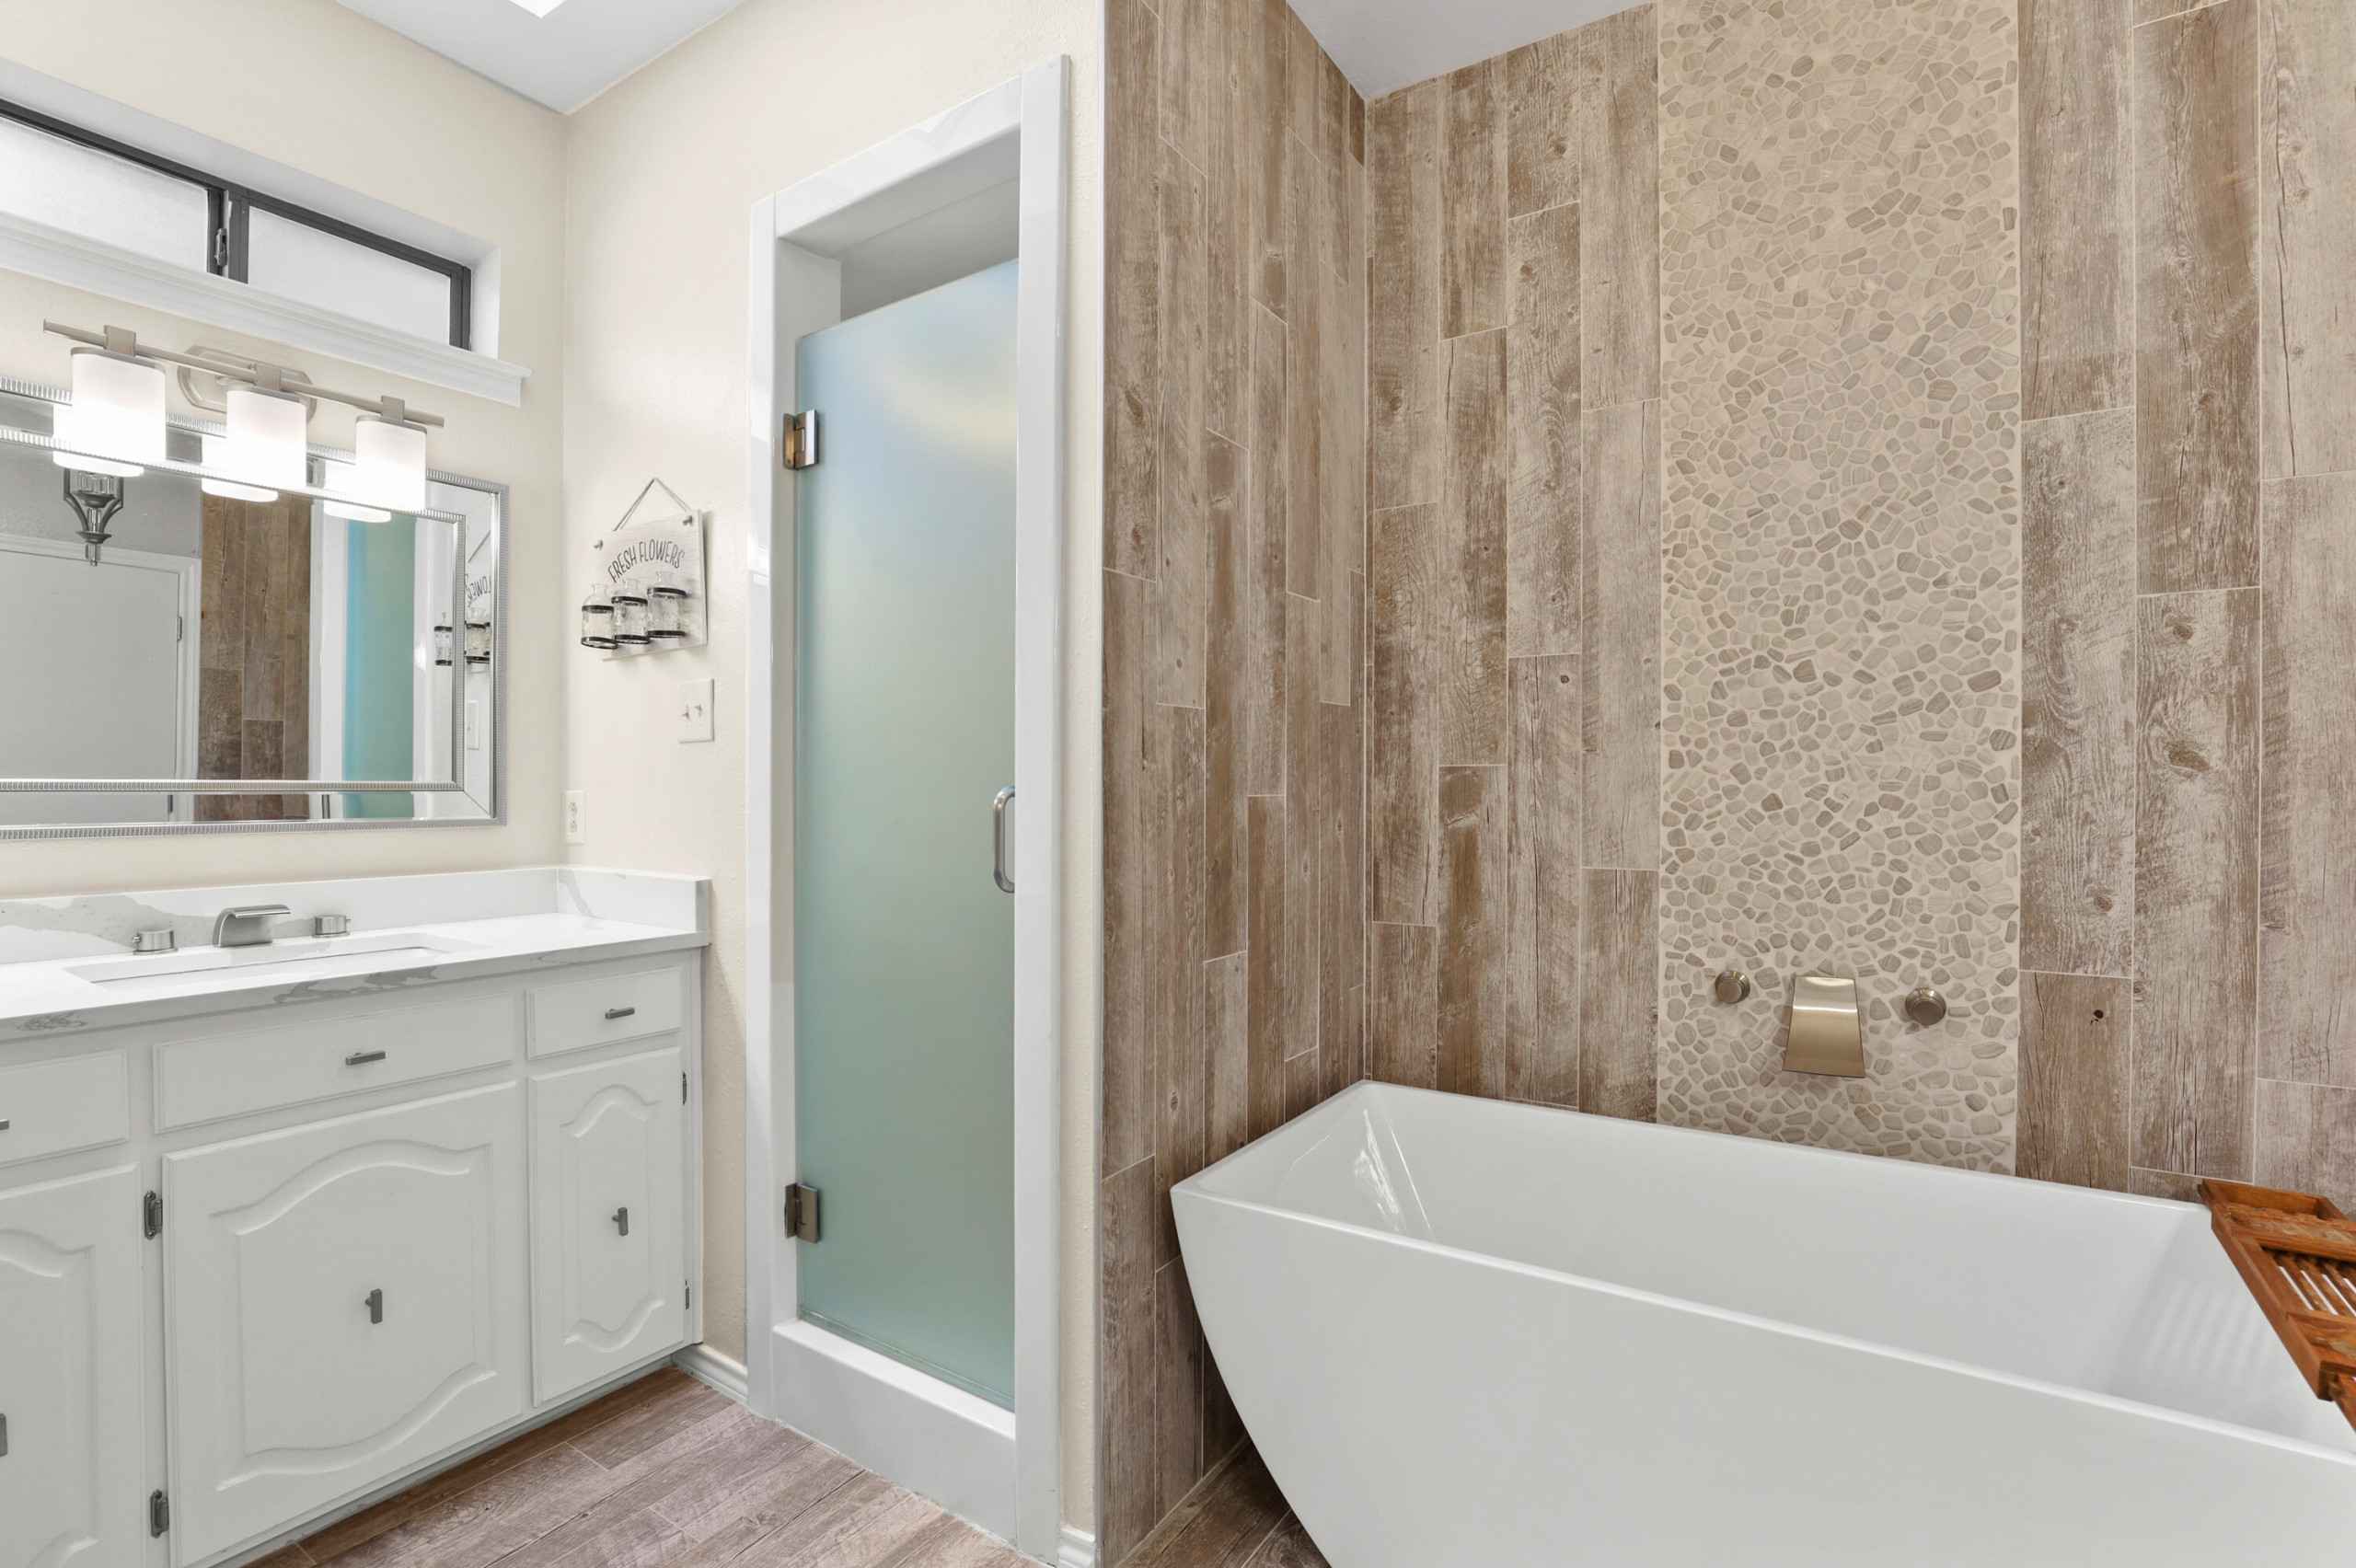 Bath Tray, Shower Caddy, Modern Farmhouse, Primitive, Bathroom Decor - The  Rustic Pelican